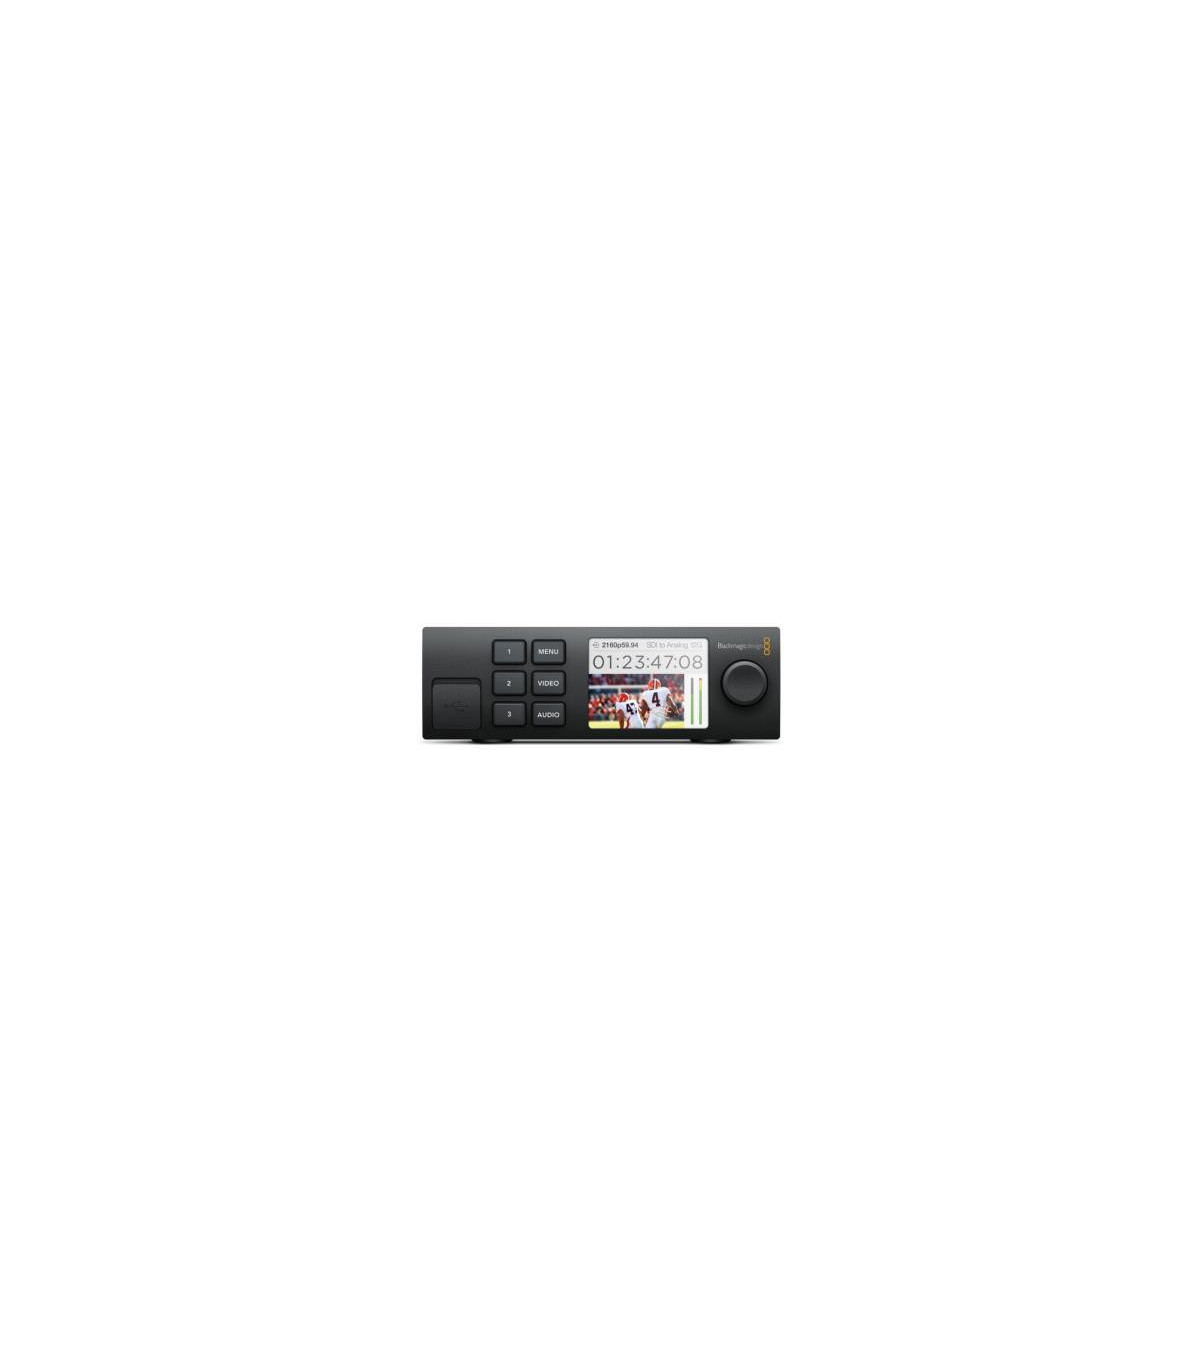 Blackmagic Carte d'acquisition DeckLink Mini Monitor 4K - Prophot